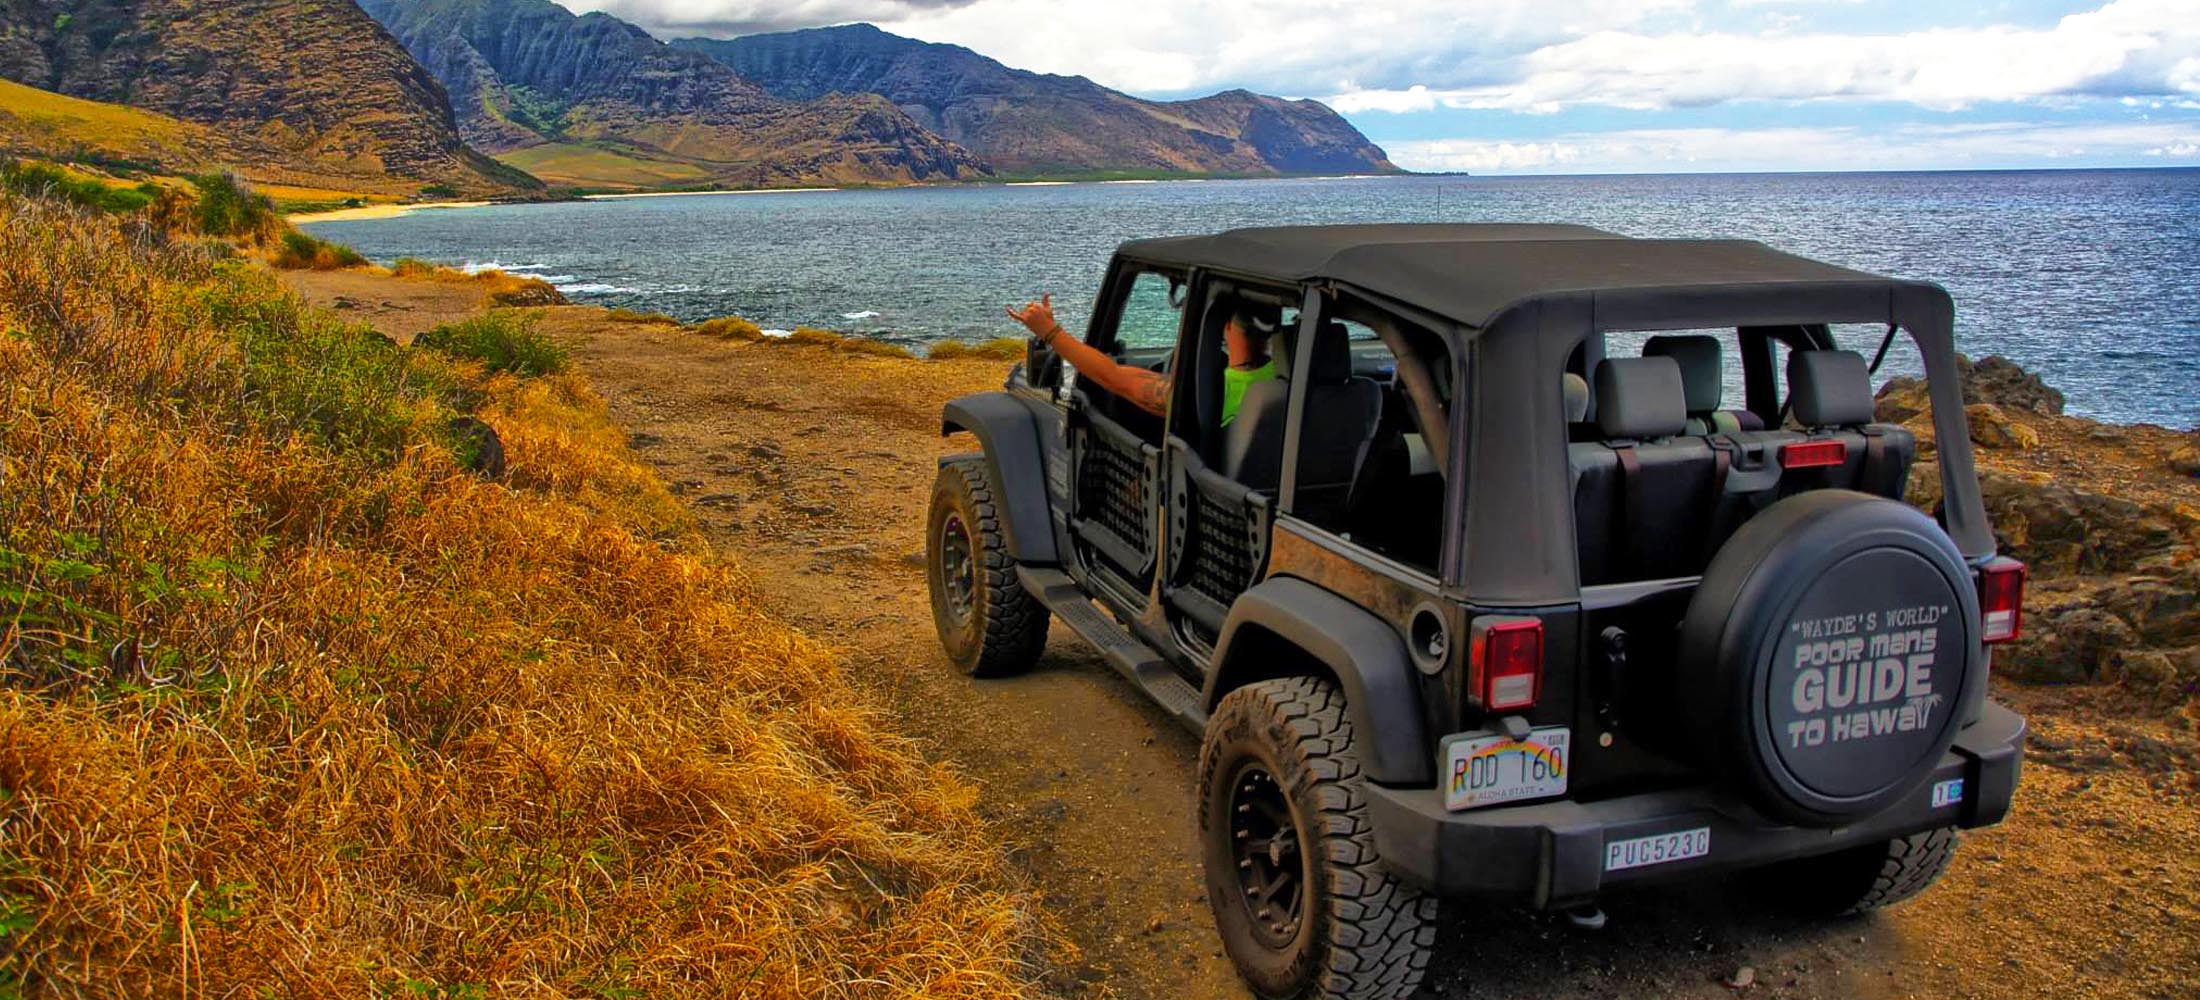 jeep tours hawaii big island